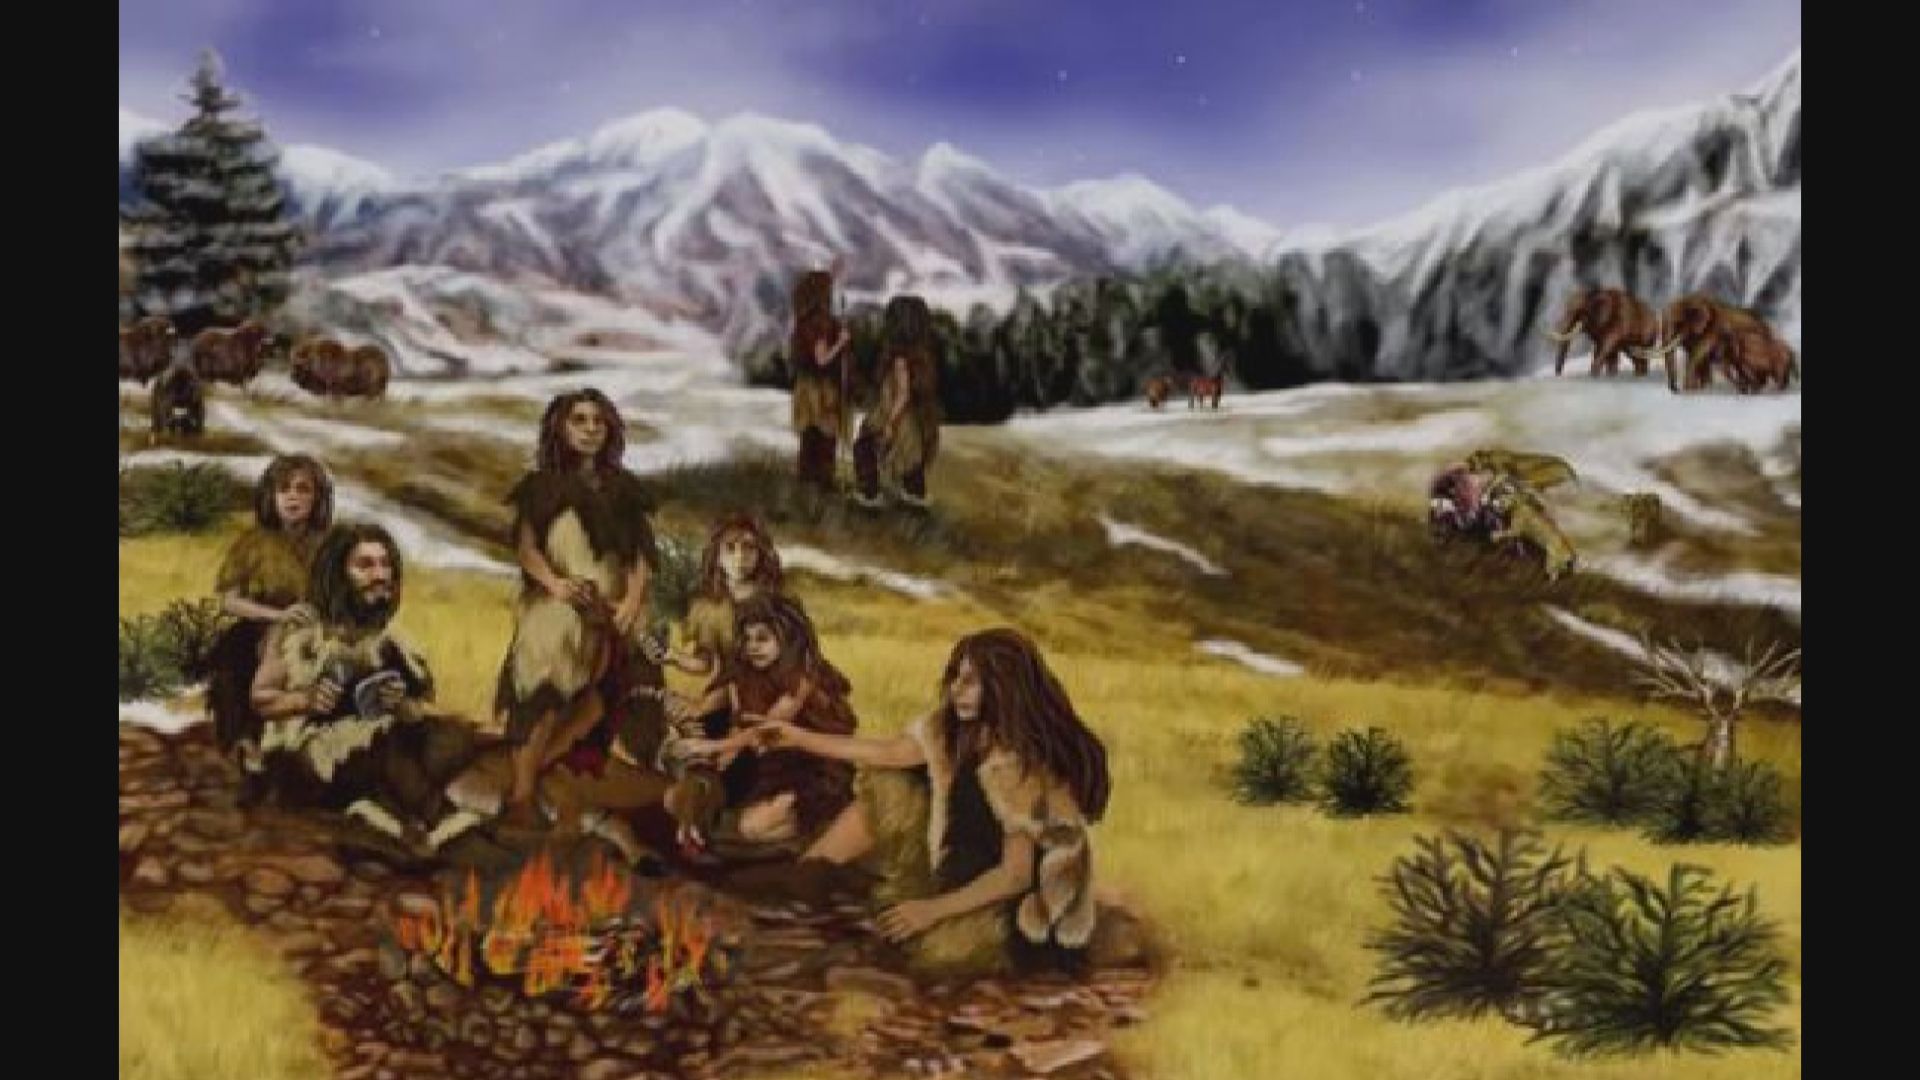 【環球薈報】考古發現尼安德特人12.5萬年前曾改變聚居地生態地貌